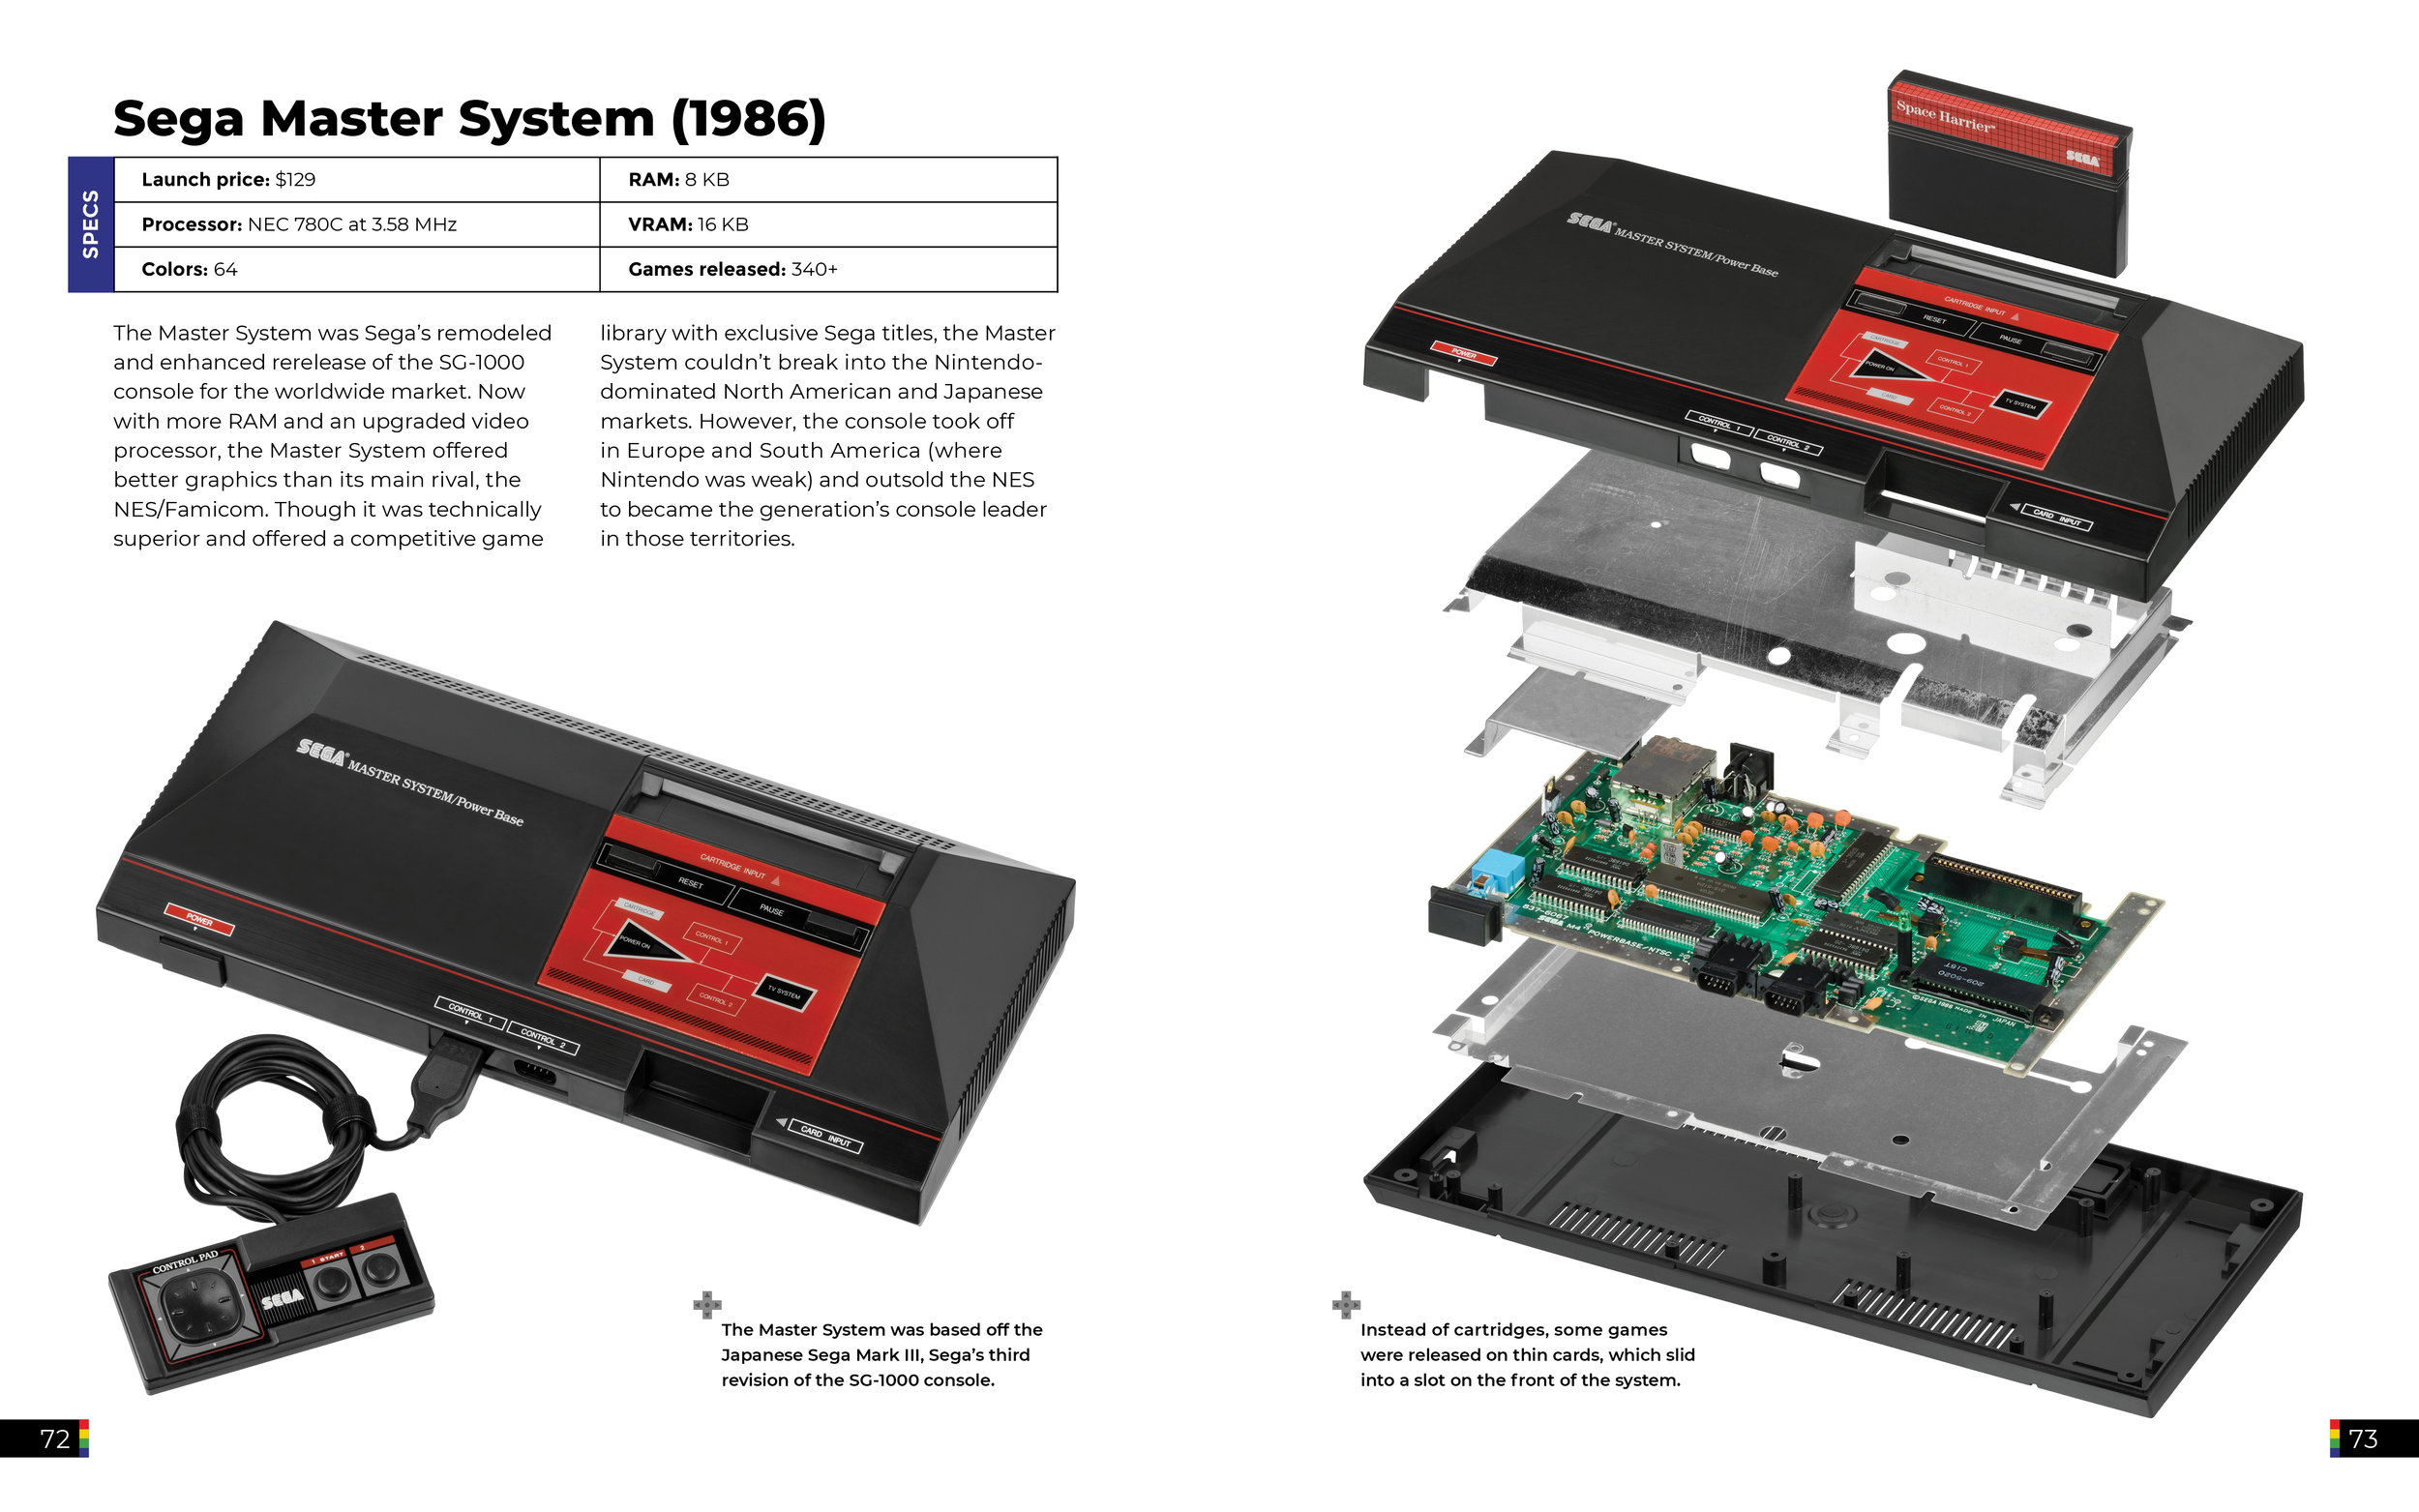 Máy chơi game: Lịch sử ảnh từ Atari đến Xbox: Được trình bày theo trình tự thời gian, series ảnh này sẽ giới thiệu cho bạn những chiếc console đầu tiên như Atari hay Pong, đến những kẻ khổng lồ ngày nay như Xbox và Playstation. Hãy cùng xem và tìm hiểu lịch sử ấn tượng của máy chơi game!